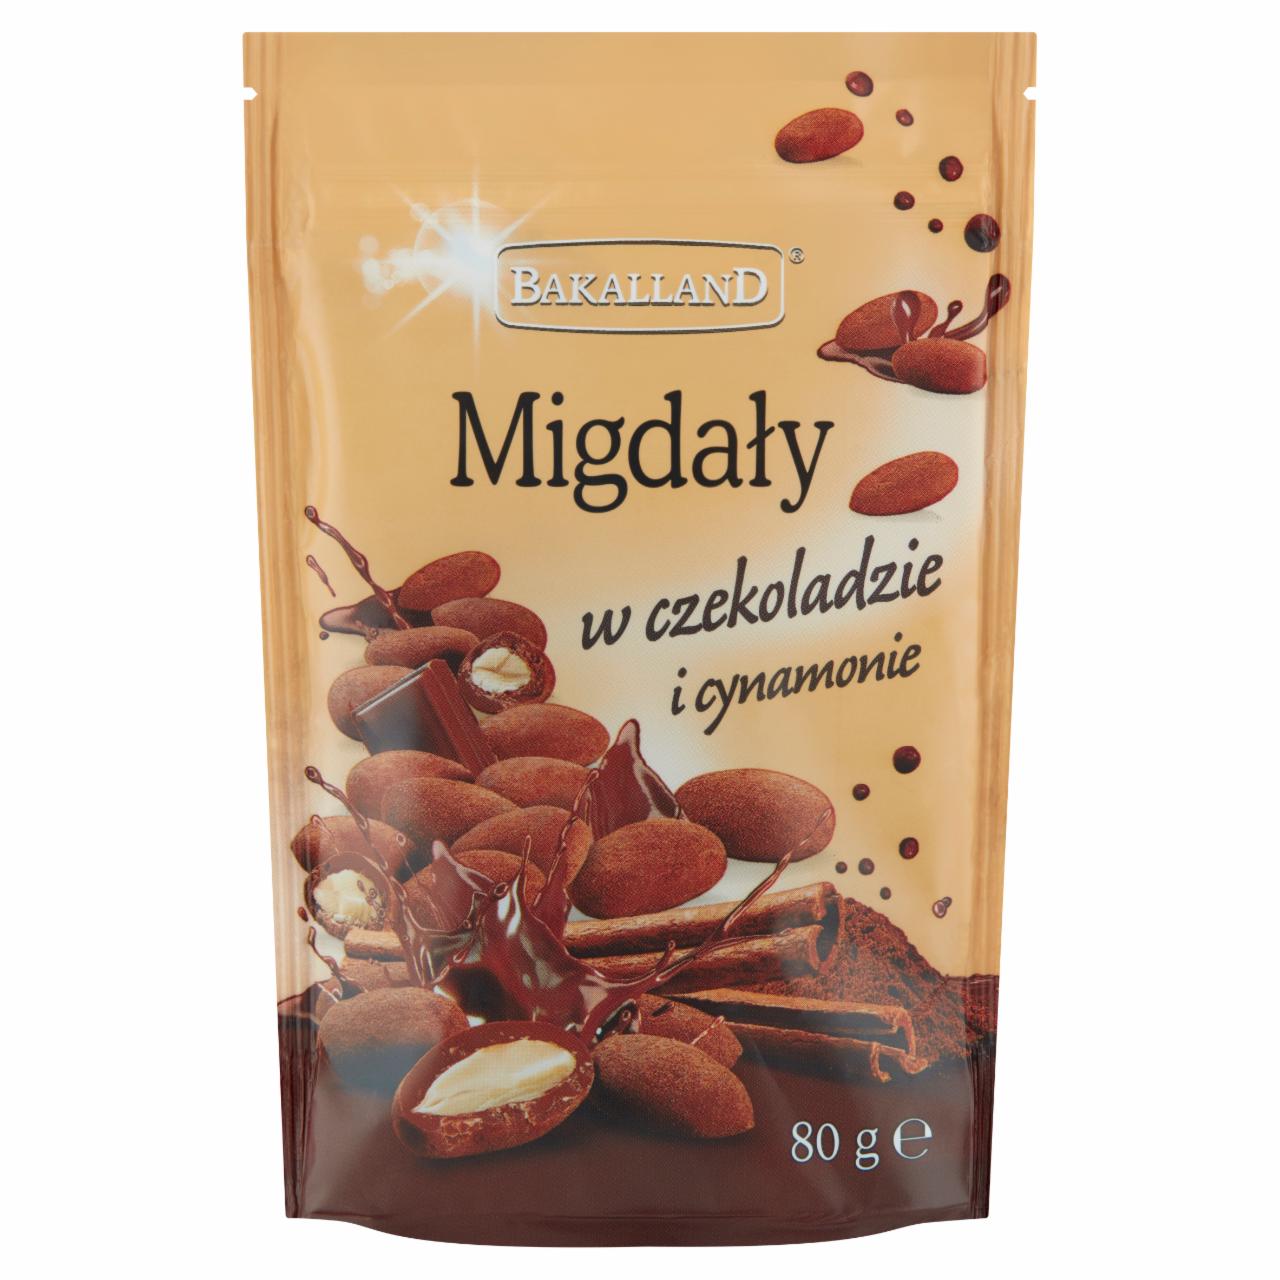 Zdjęcia - Bakalland Migdały w czekoladzie i cynamonie 80 g